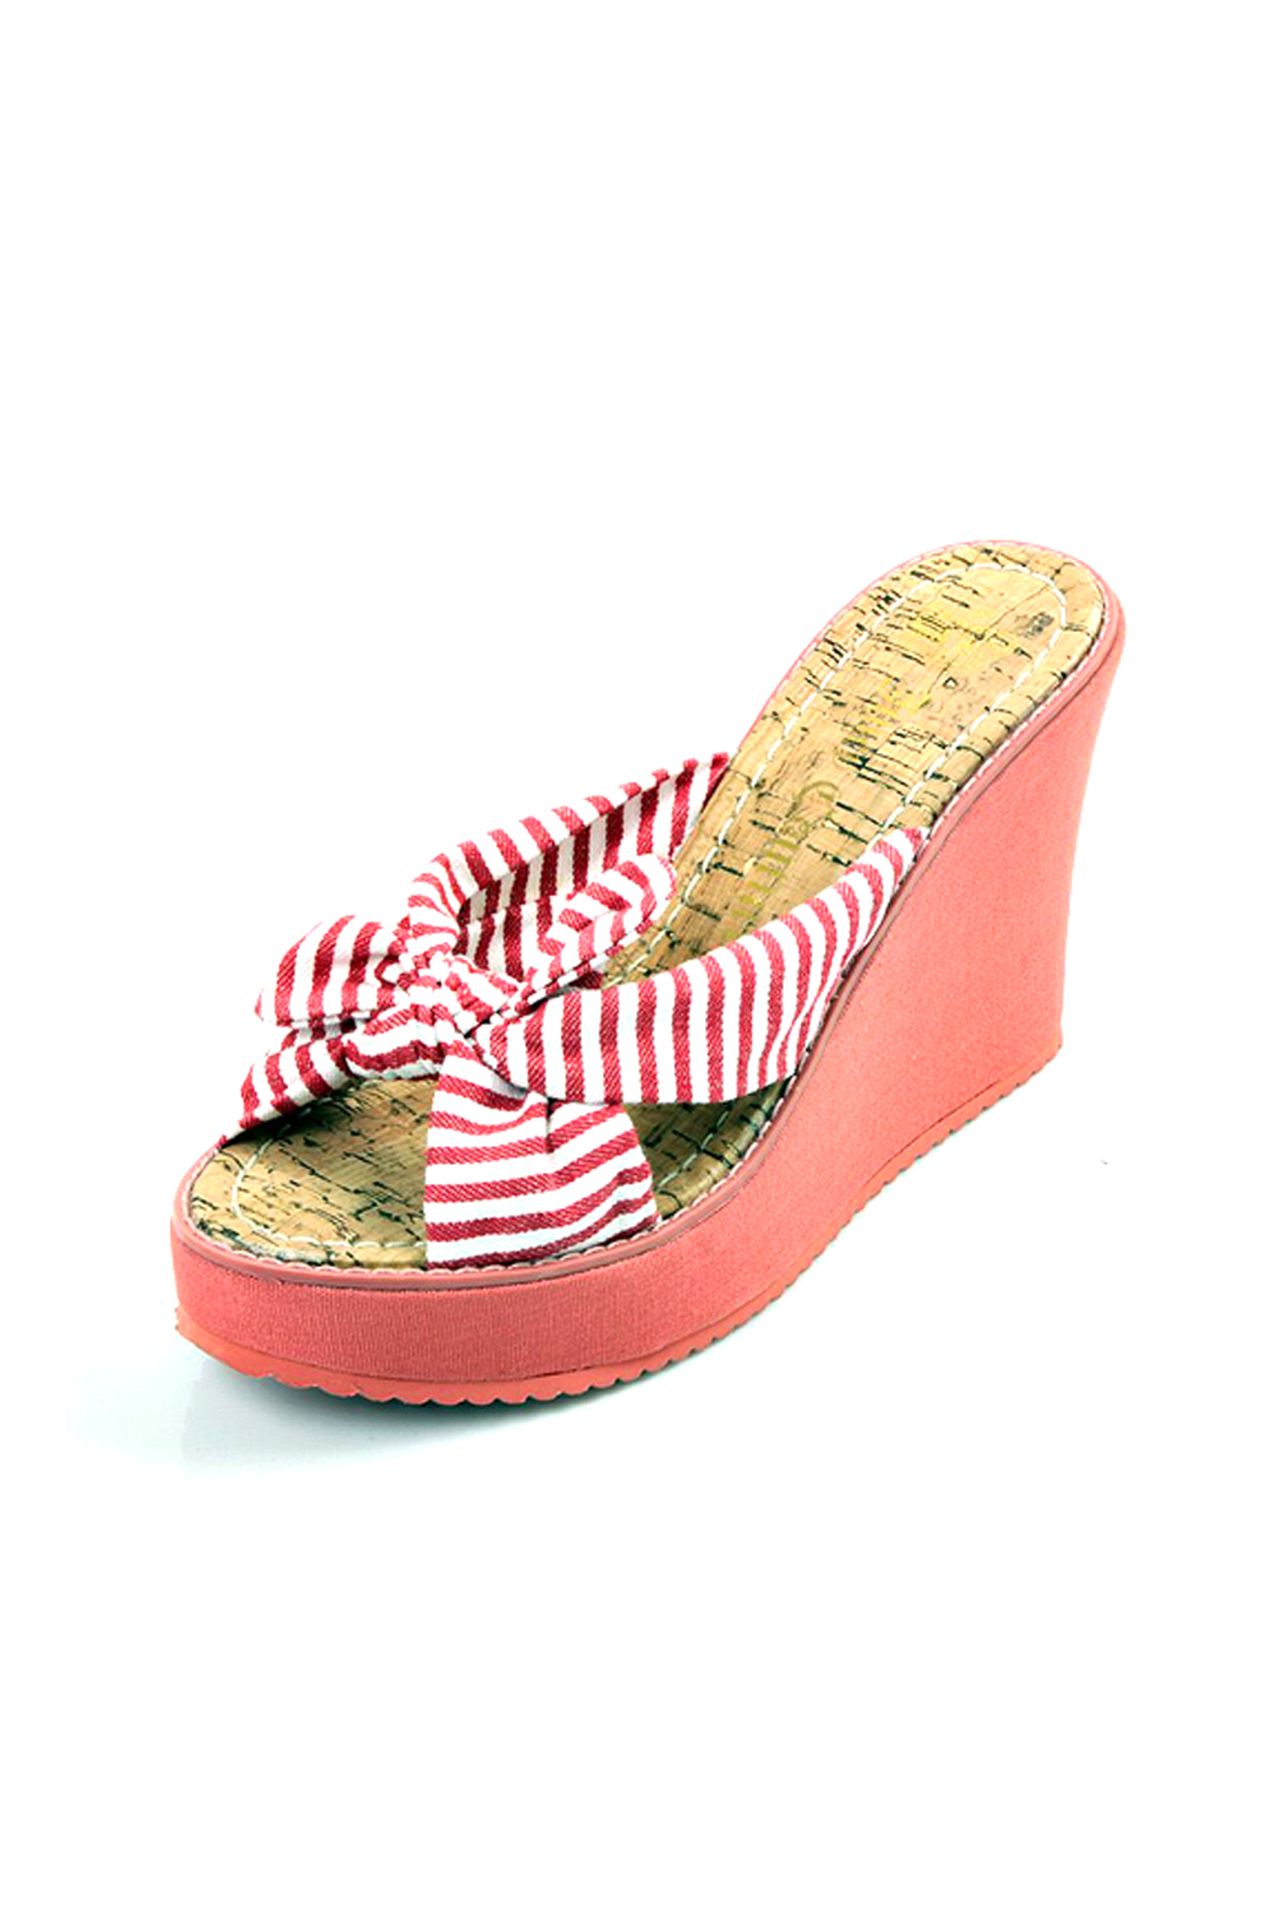 Обувь женская Шлепки JUICY COUTURE (J1066002/11.1). Купить за 3400 руб.